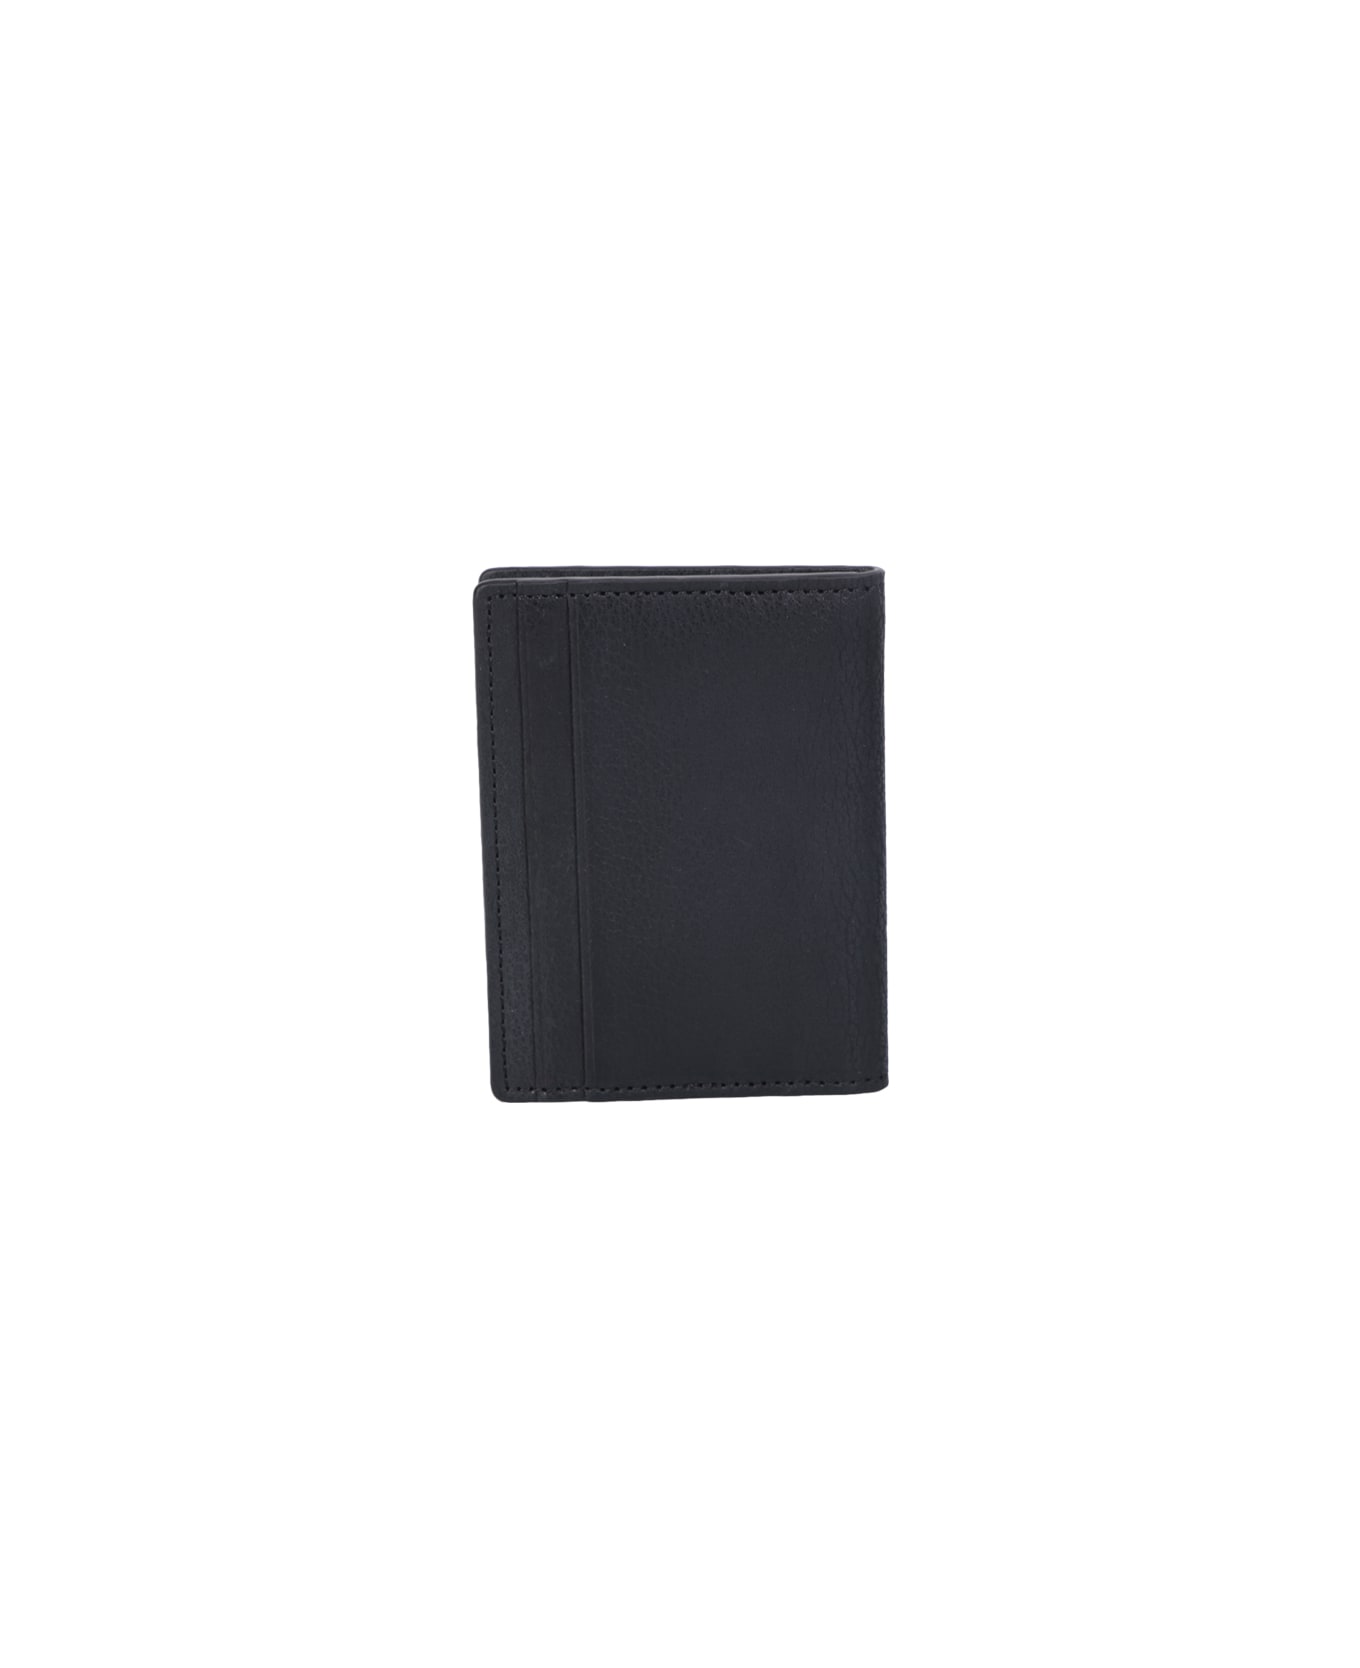 Orciani Chevrette Card Holder Black - Black